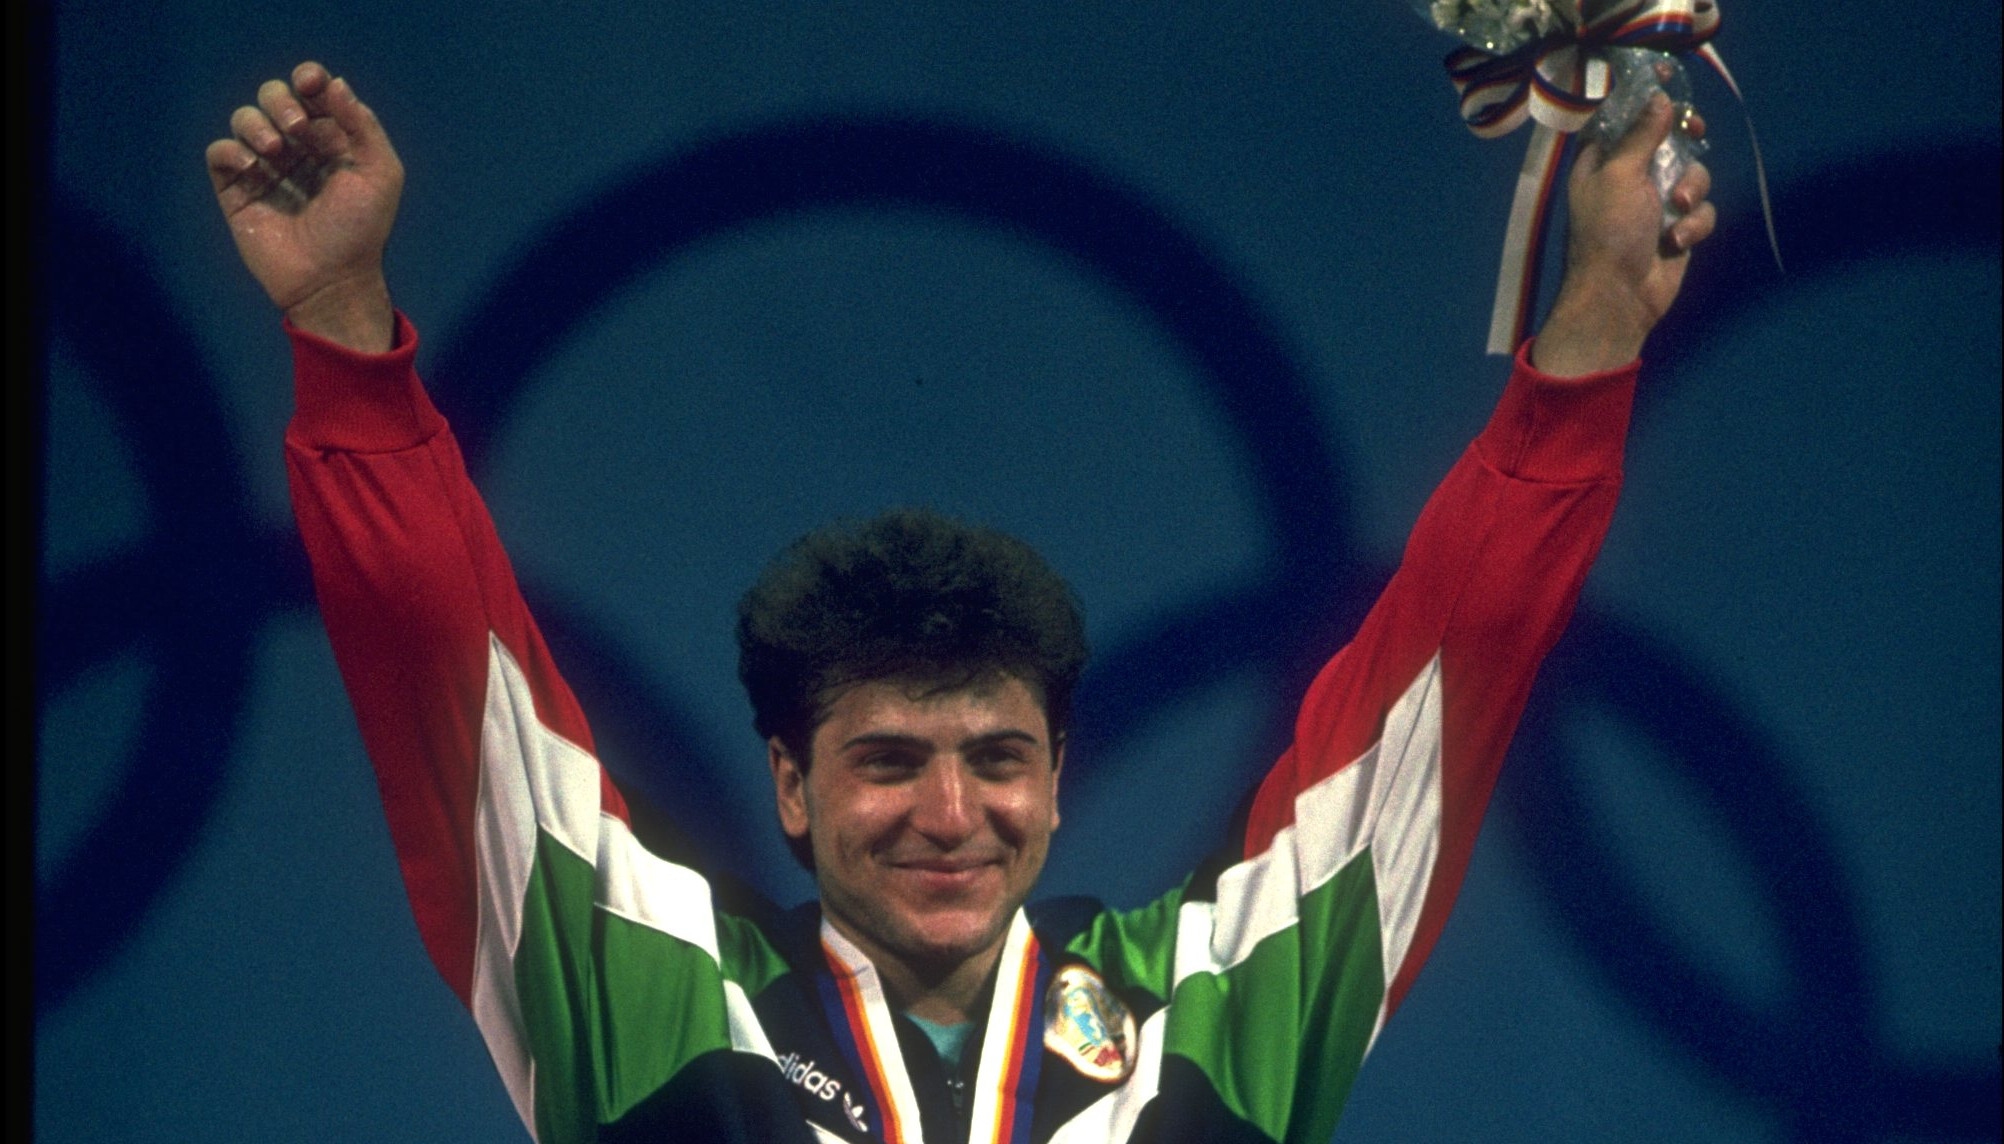 Една от олимпийските шампиони на България - Борислав Гидиков, празнува